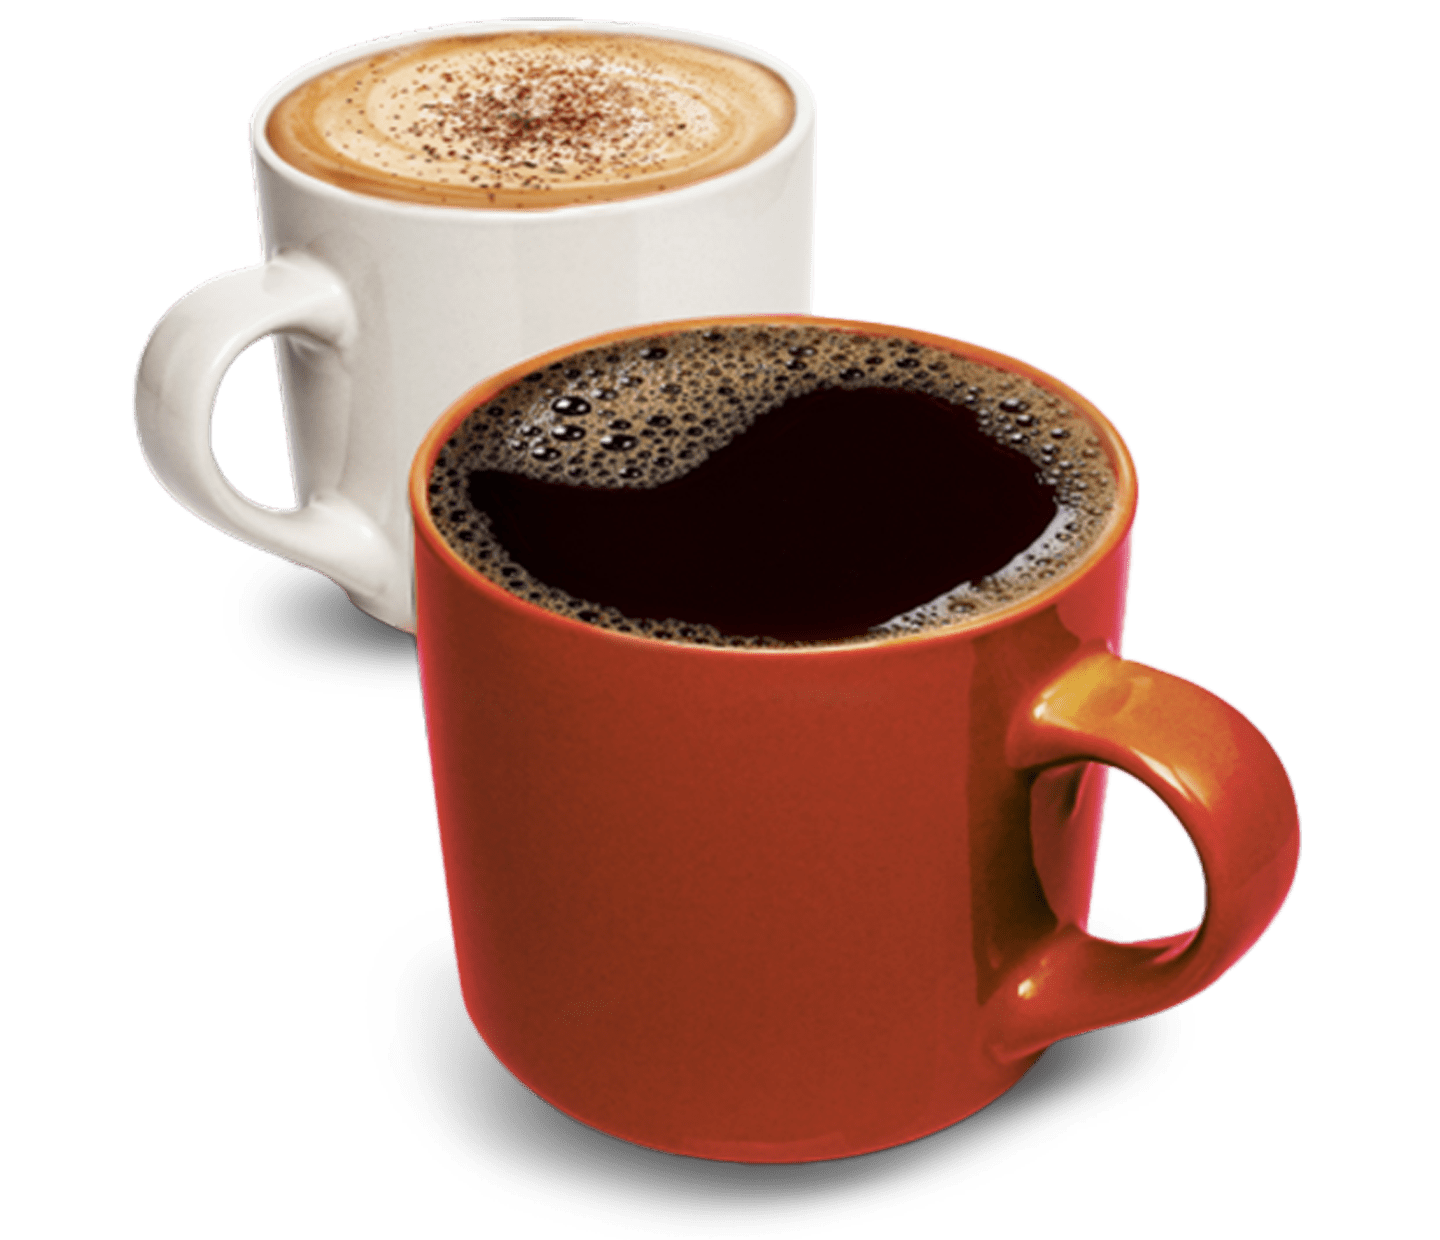 Intensidad y sabor del café